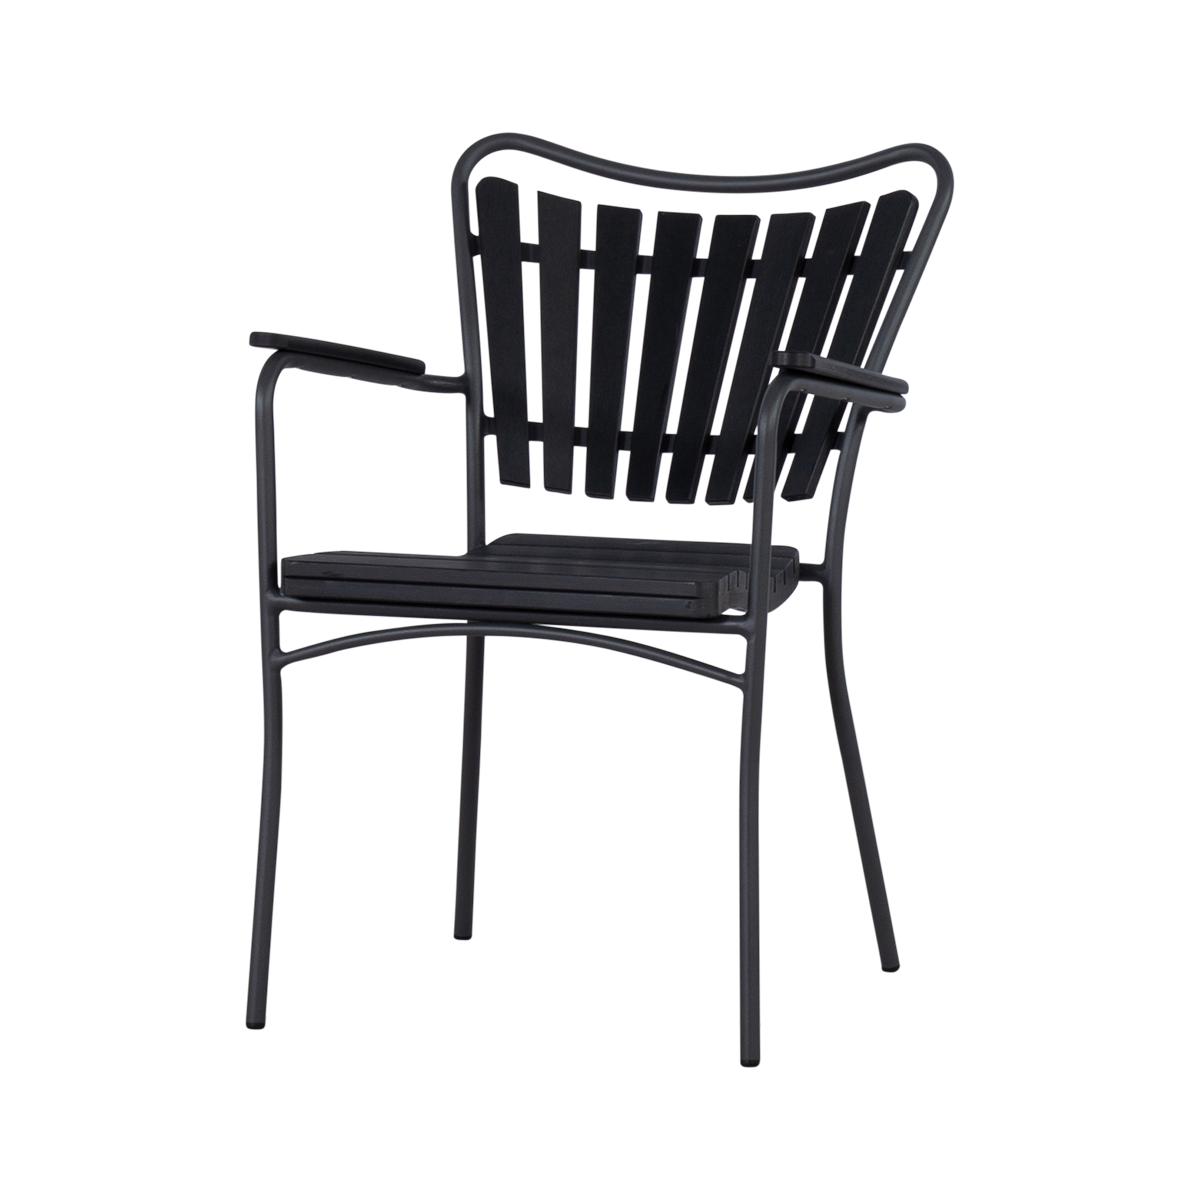 Cinas - Hard & Ellen Garden Chair - Polywood - Anthracite/ Black (3115020)